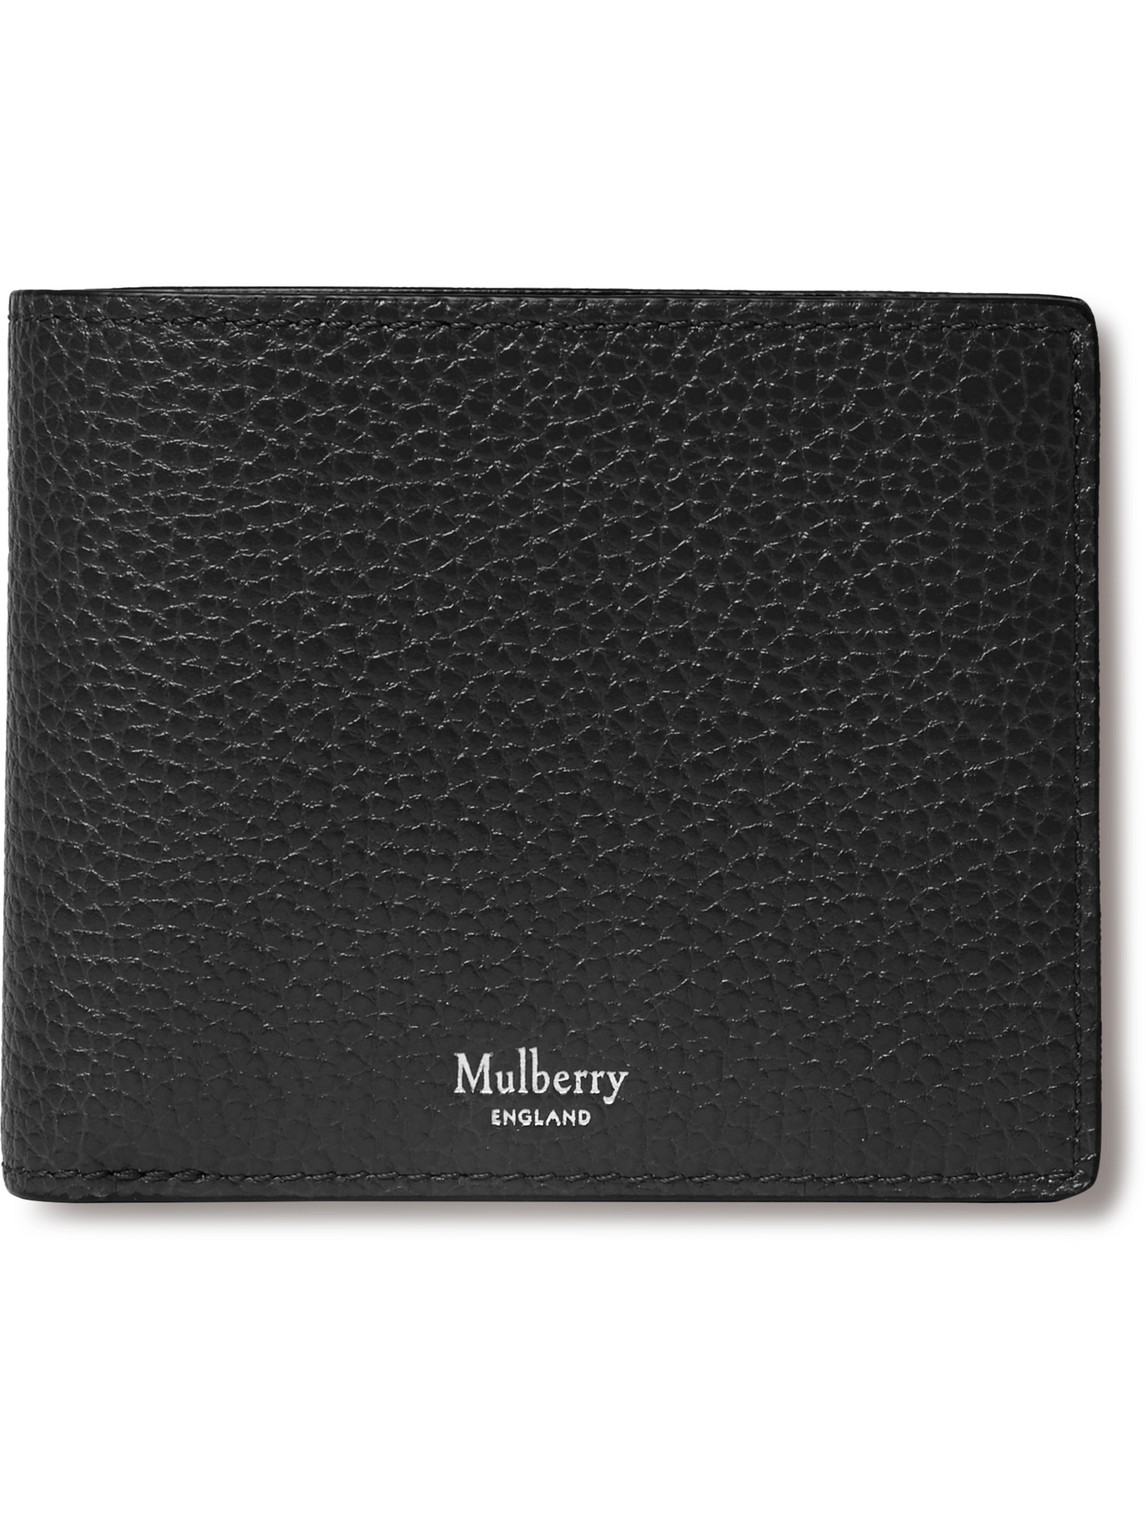 Mulberry - Full-Grain Leather Billfold Wallet - Men - Black von Mulberry